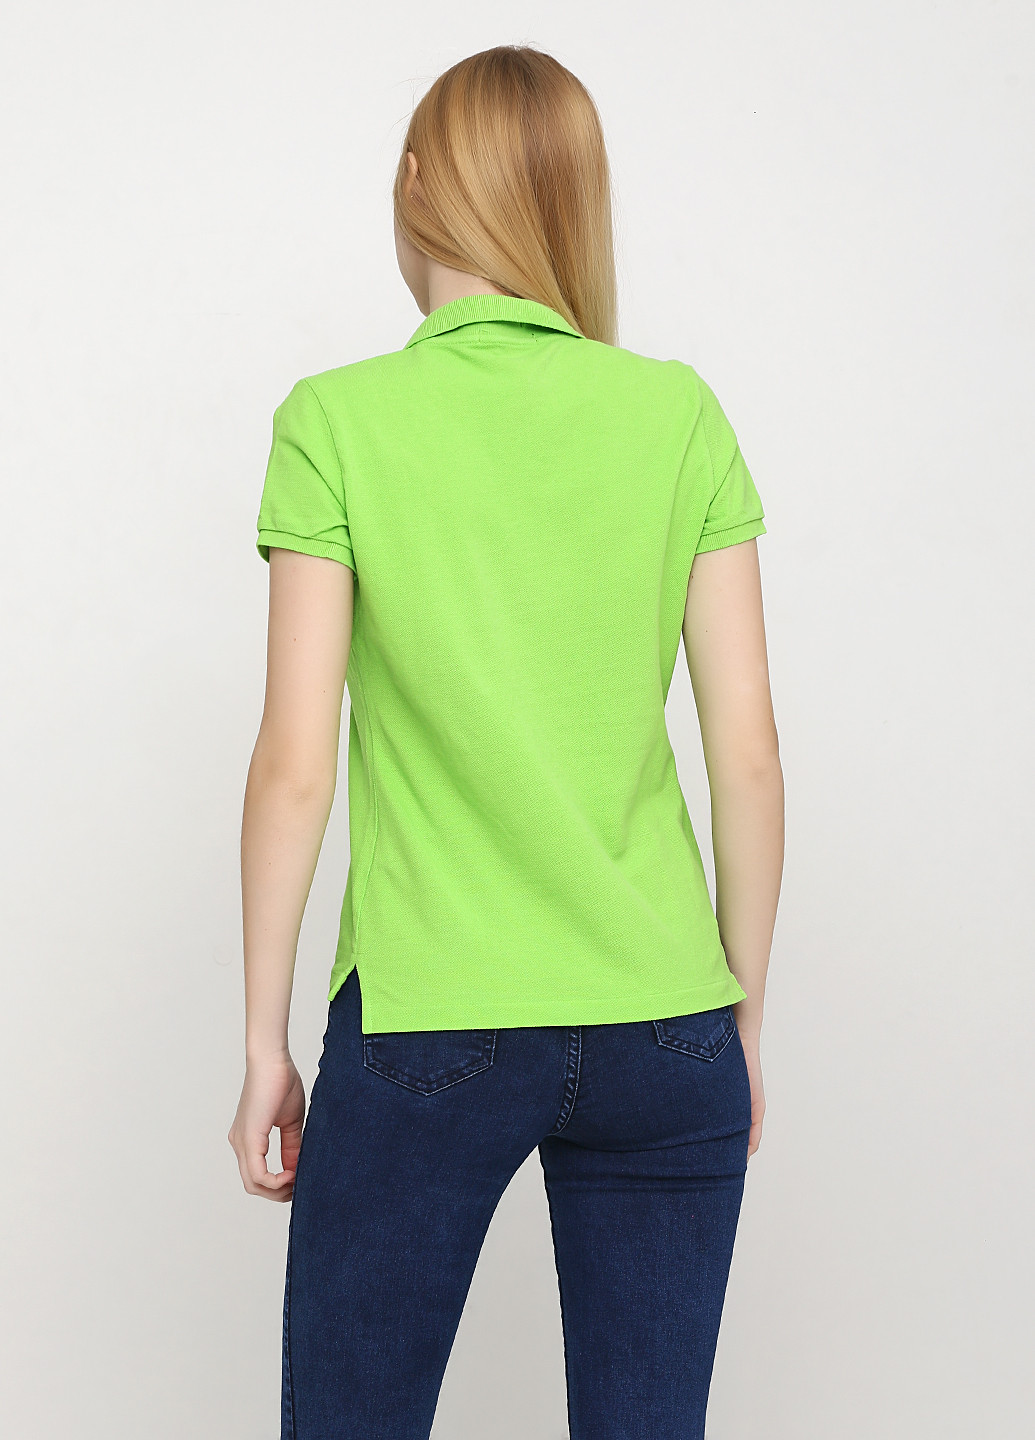 Салатовая женская футболка-поло Ralph Lauren однотонная